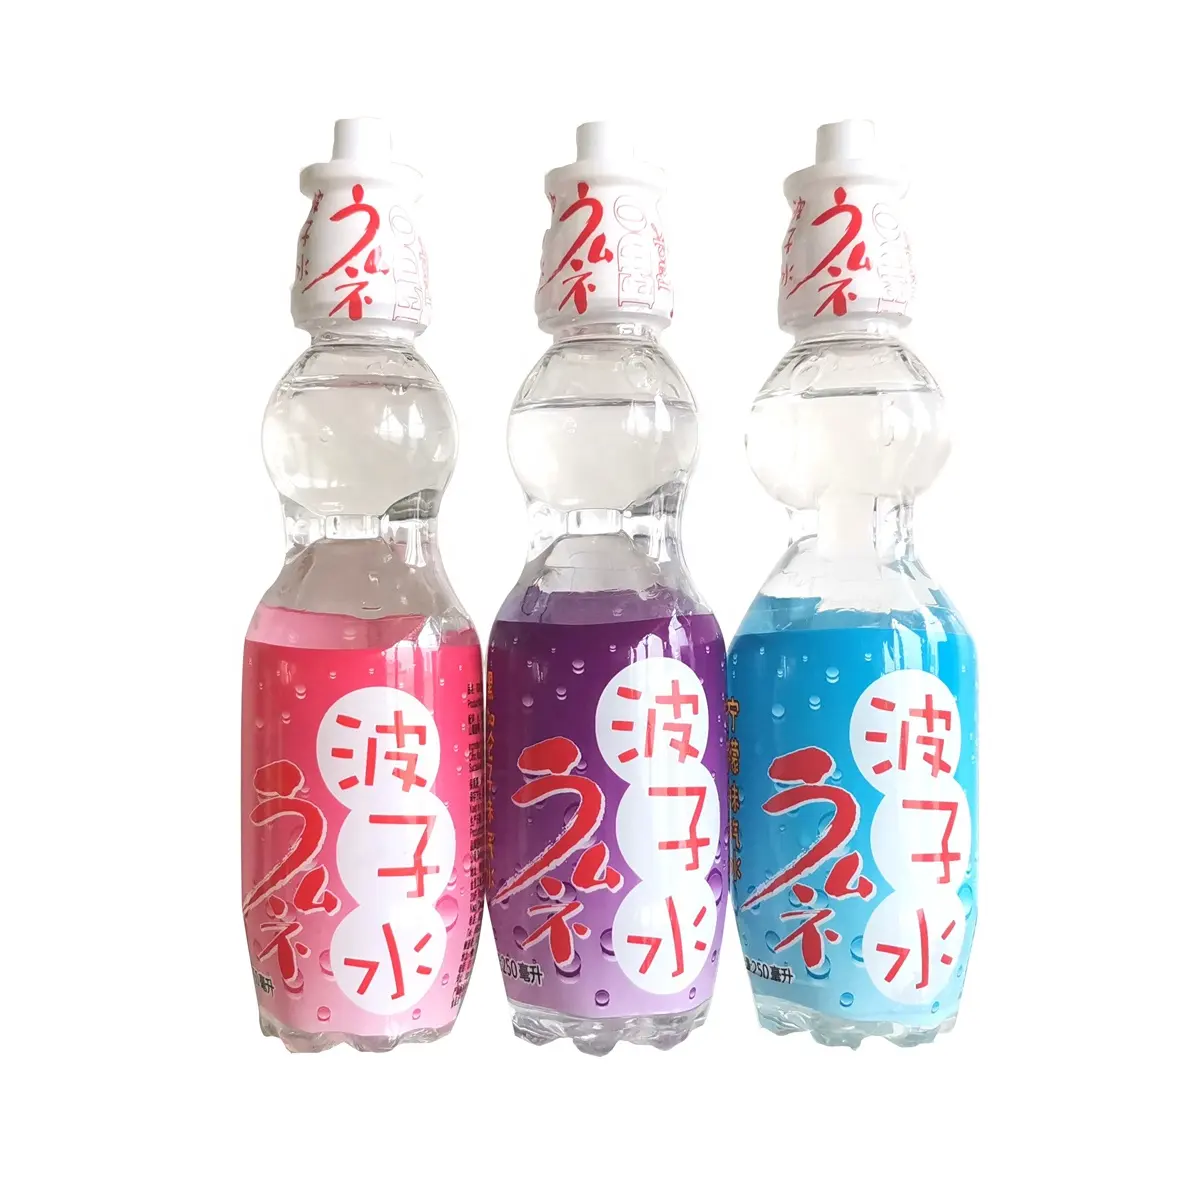 ايدو حزمة اليابانية نمط الرخام المشروبات الغازية